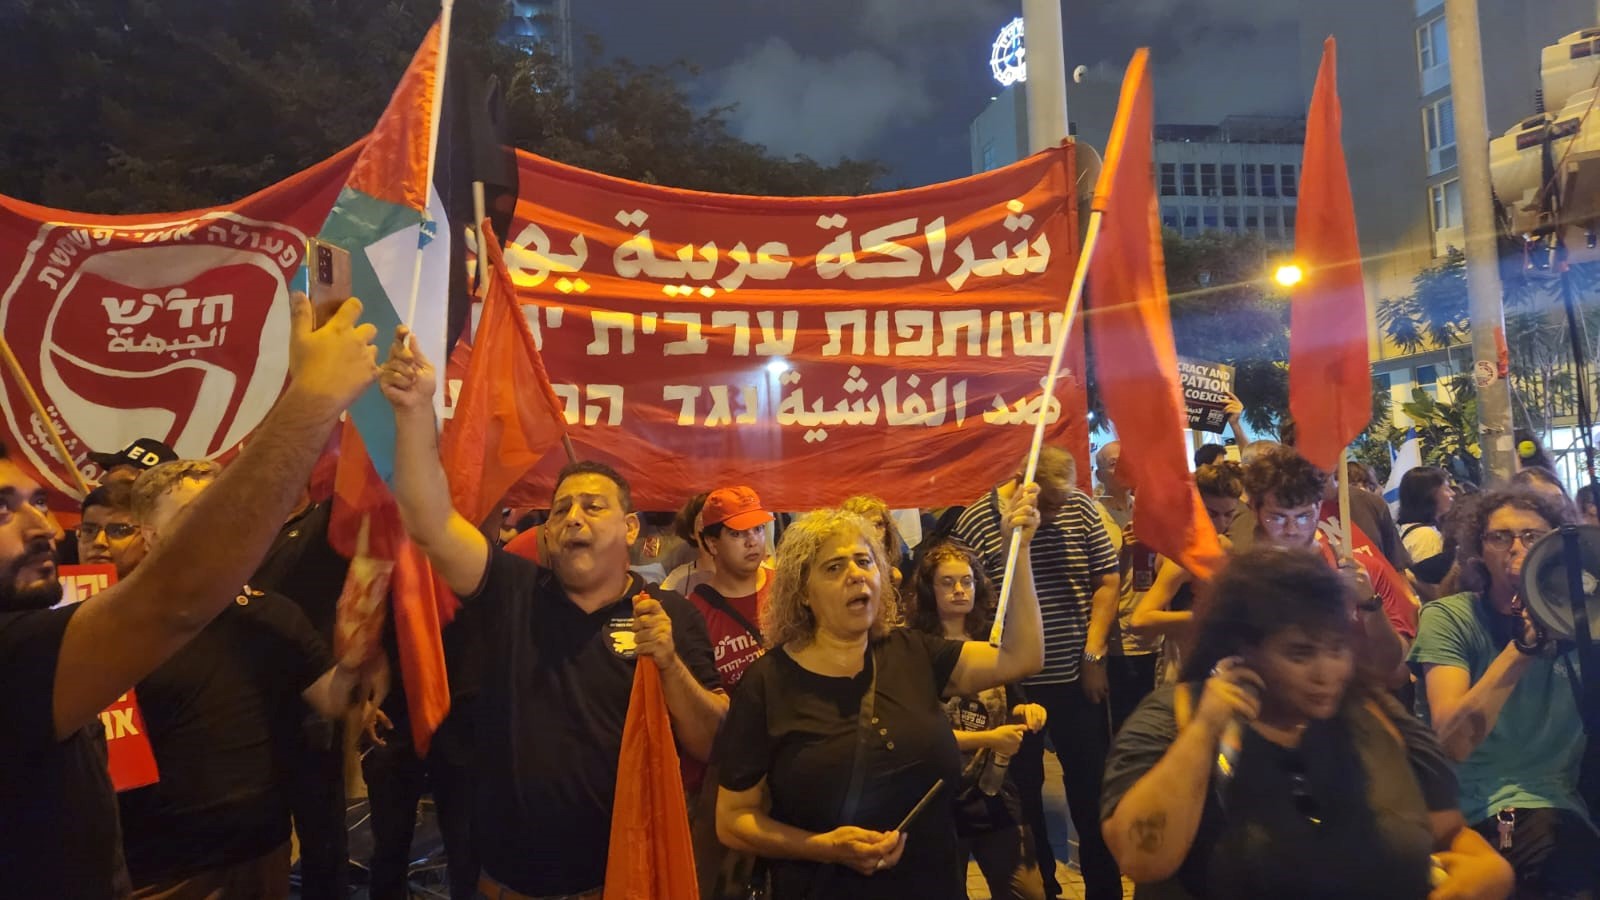 ראש עיריית טירה בהפגנה נגד ההפיכה בקפלן: זו הממשלה הגרועה ביותר שהייתה כאן